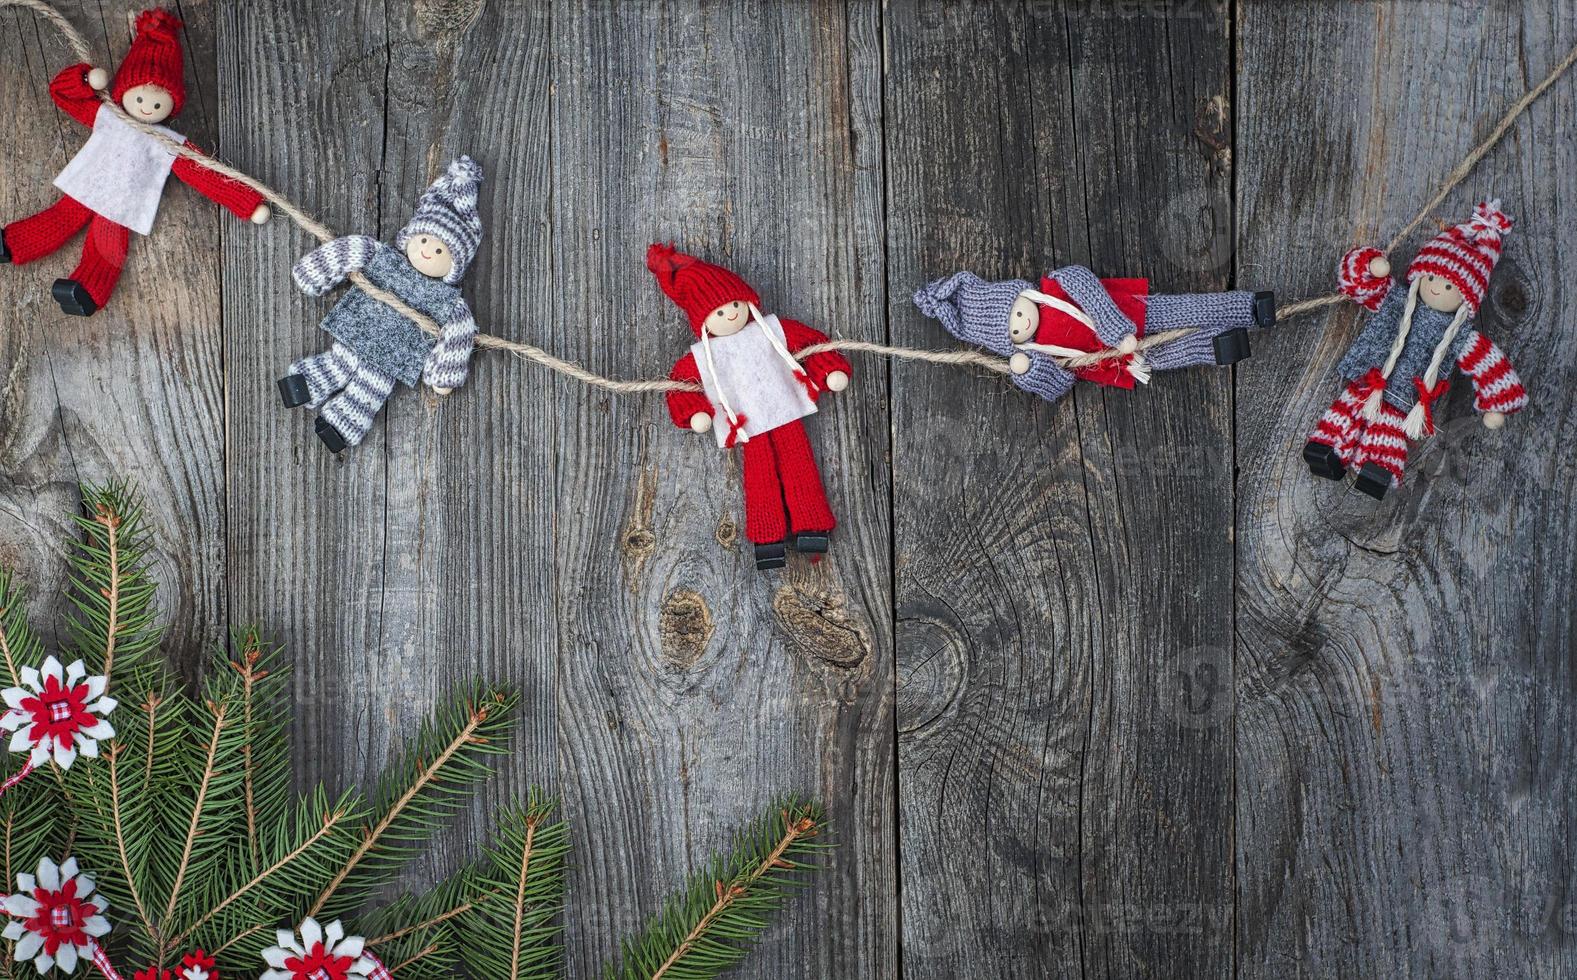 muñeca de trapo navidad colgando de la cuerda en la superficie de madera vieja gris foto